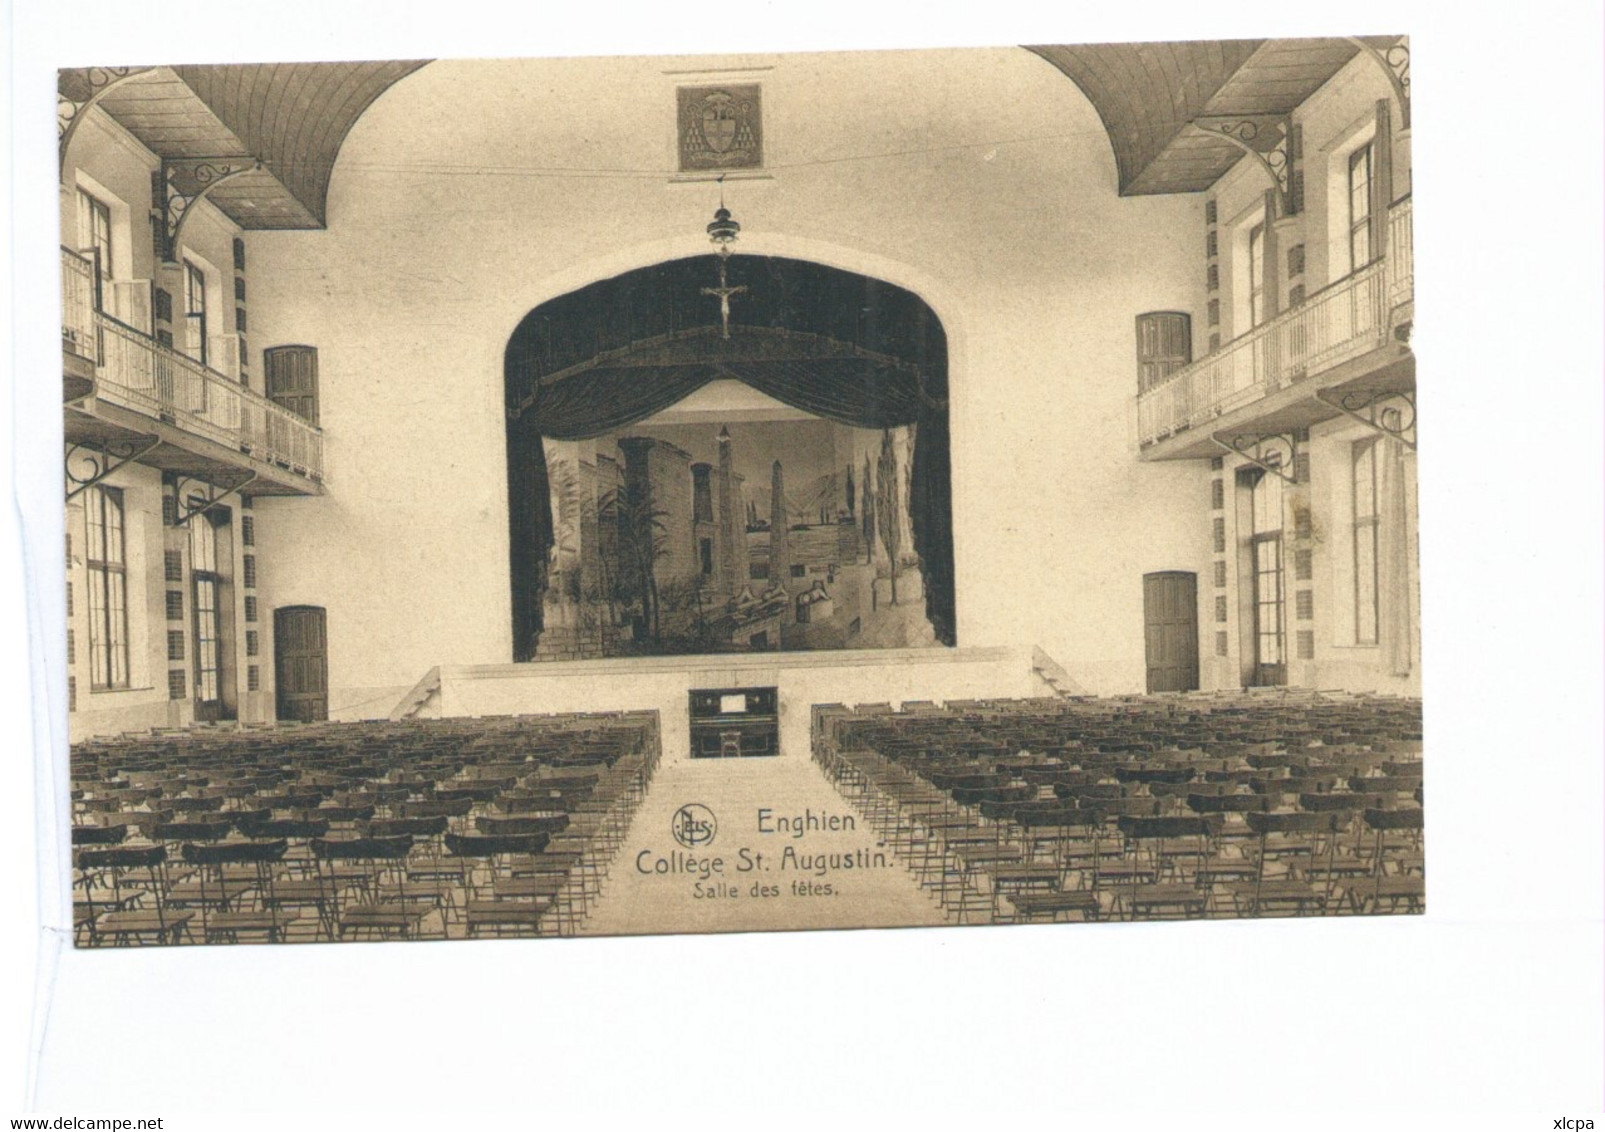 Lot de 8 cartes Enghien Collège Saint Augustin Salle d'académie - Réfectoire etc.